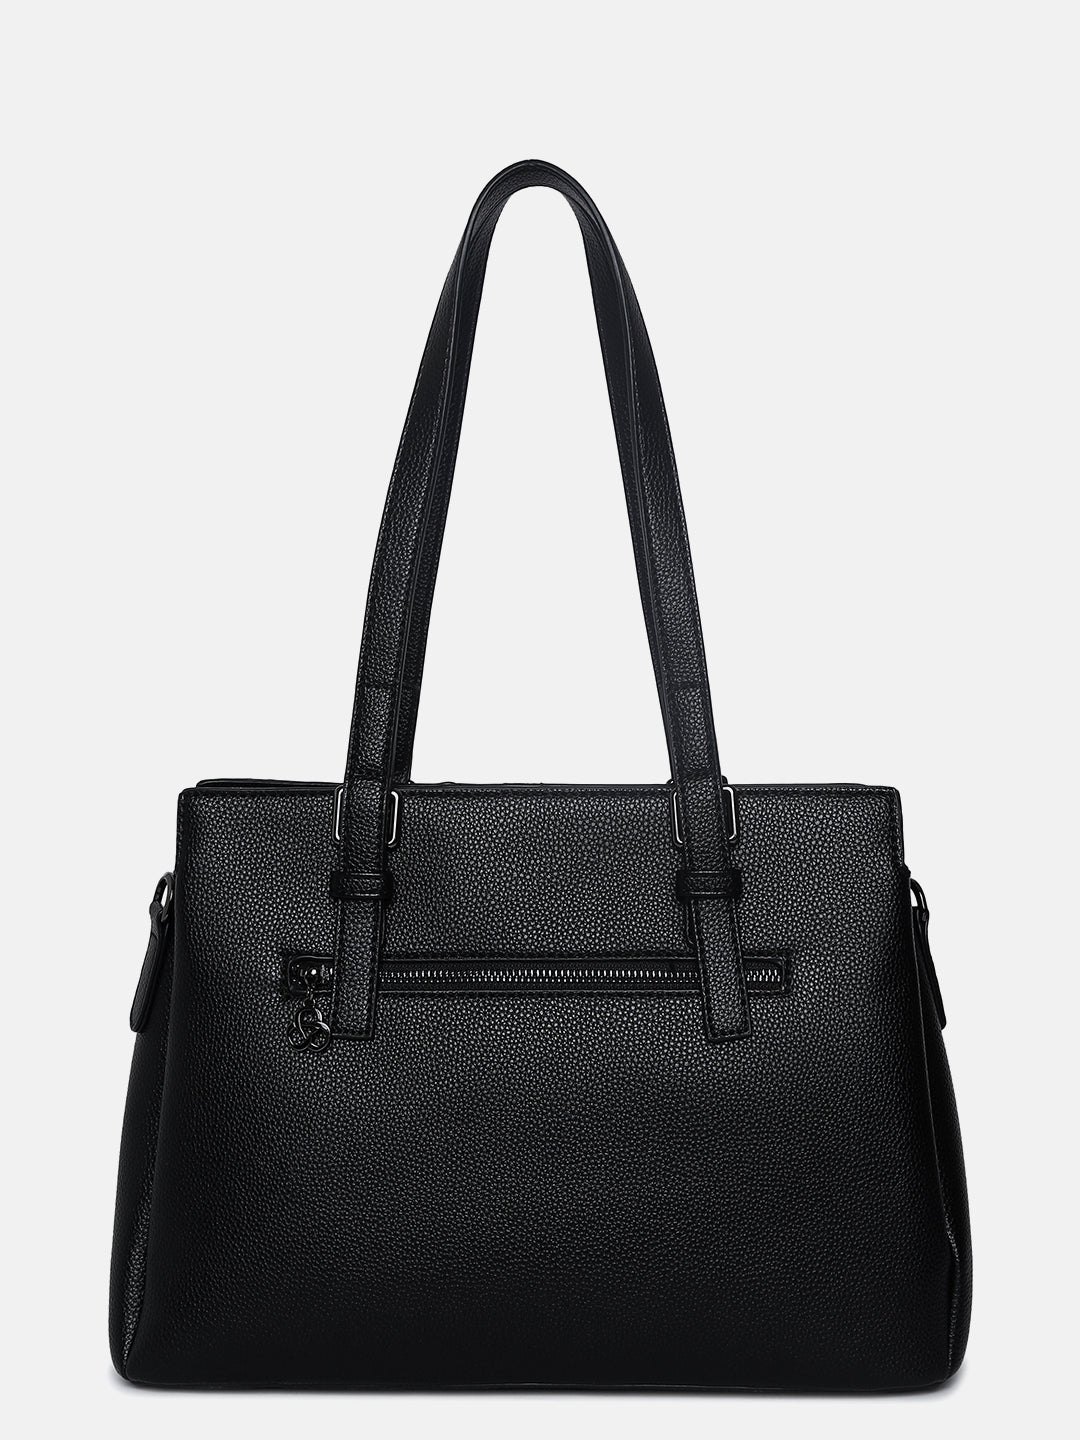 Marielle Black Handbag